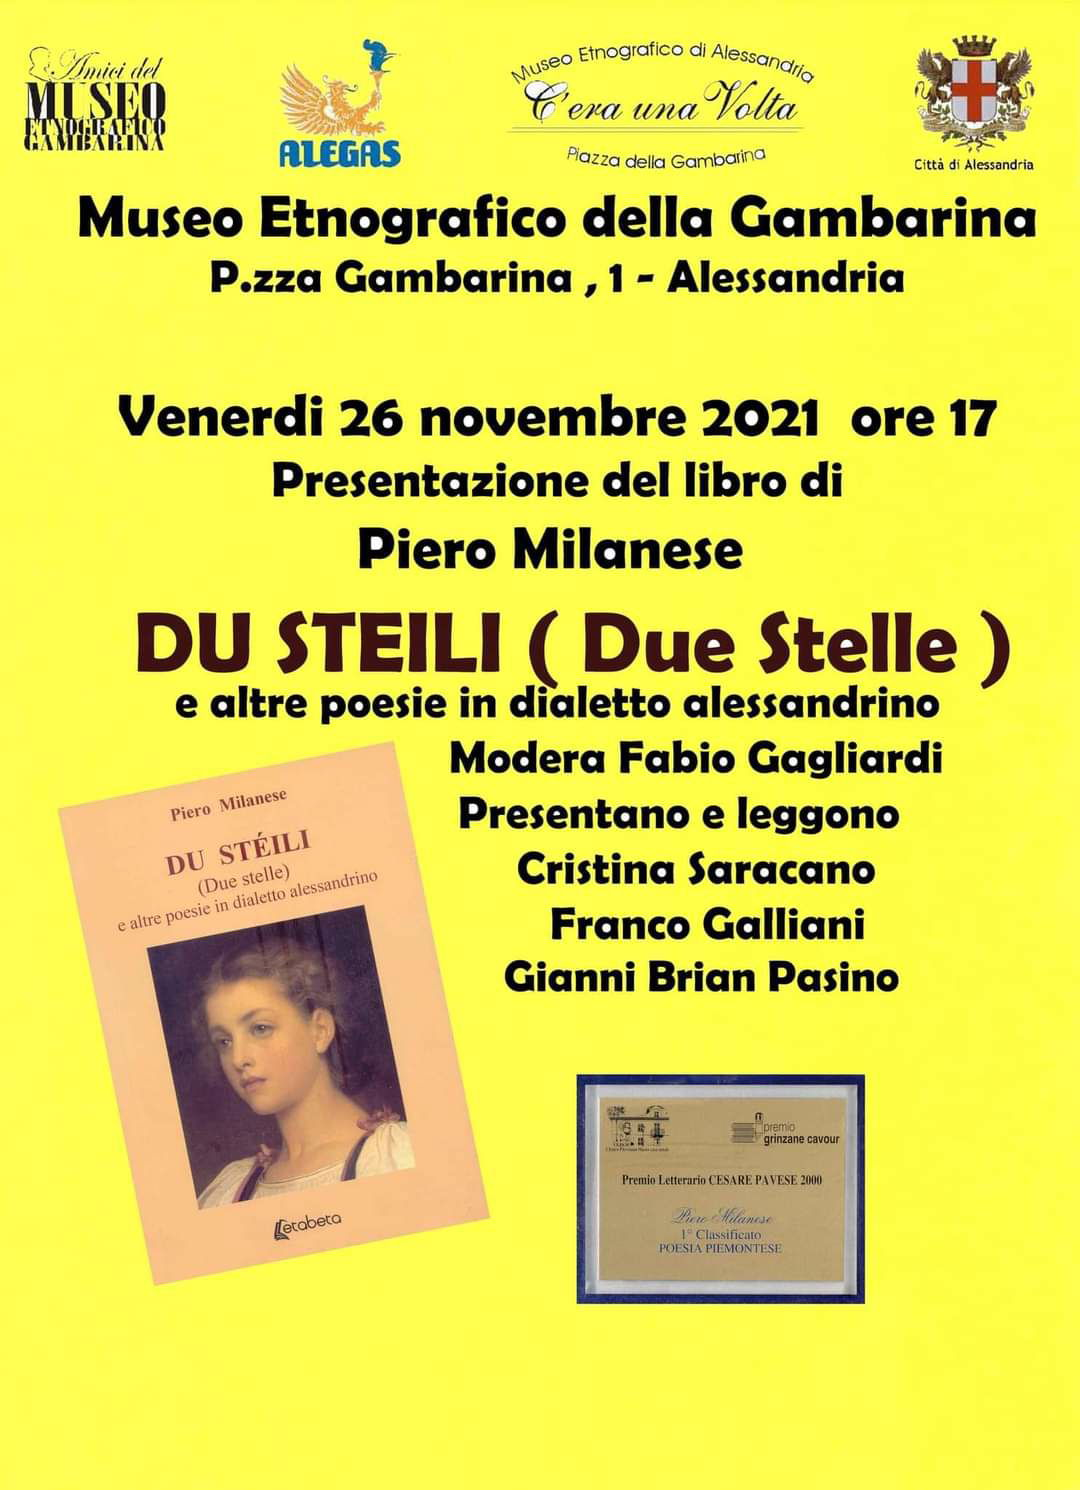 Il 26 novembre Piero Milanese presenta “Du stéili” al Museo della Gambarina